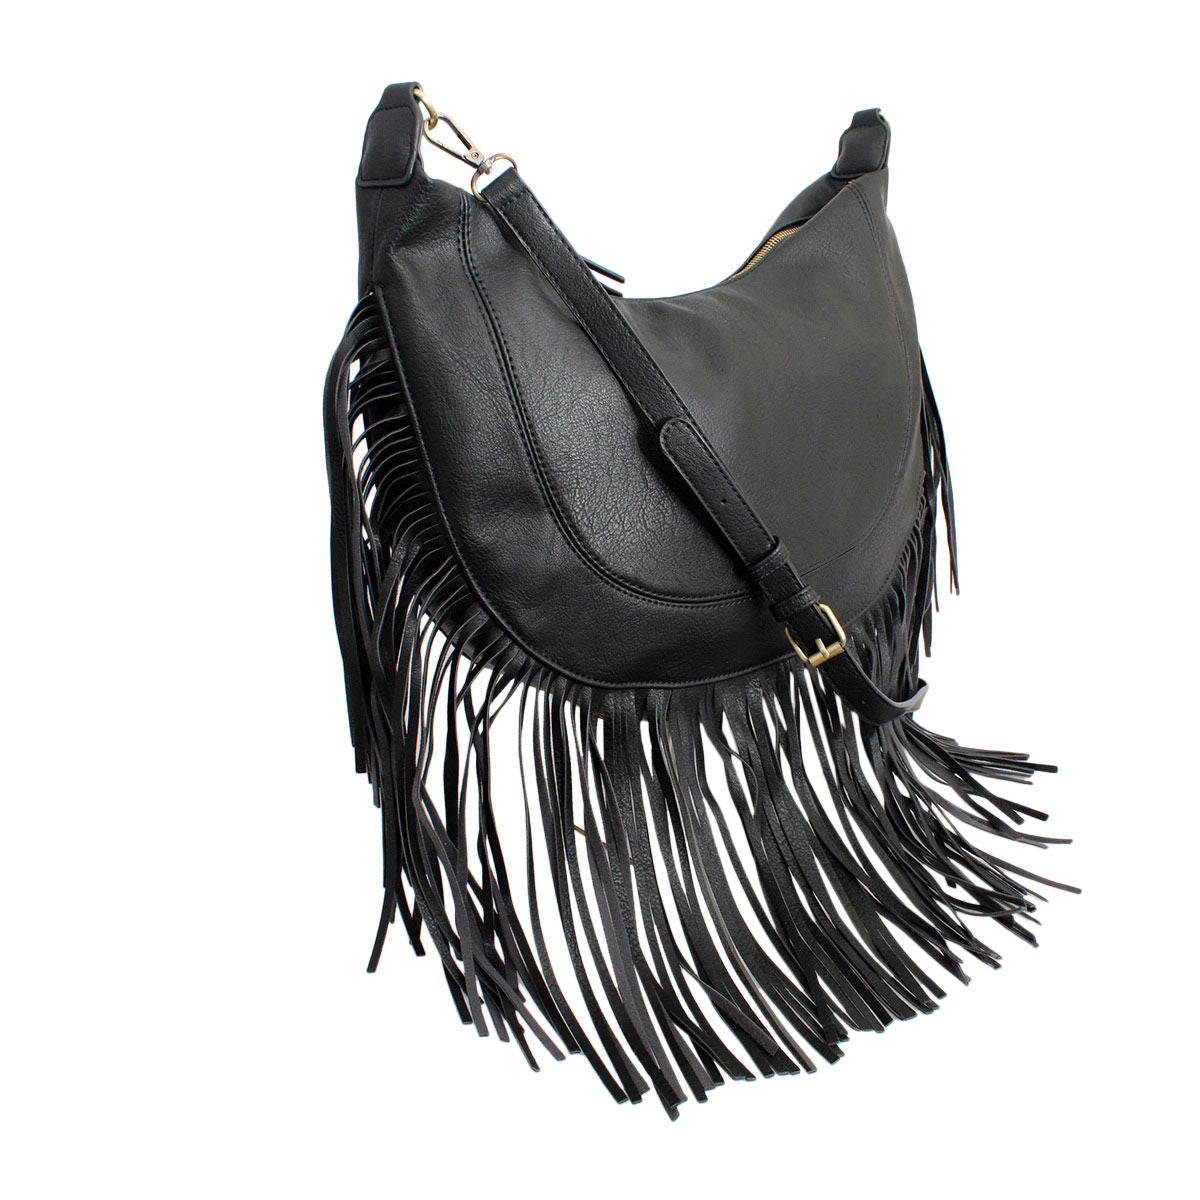 Purse Black Round Fringe Hobo Bag for Women